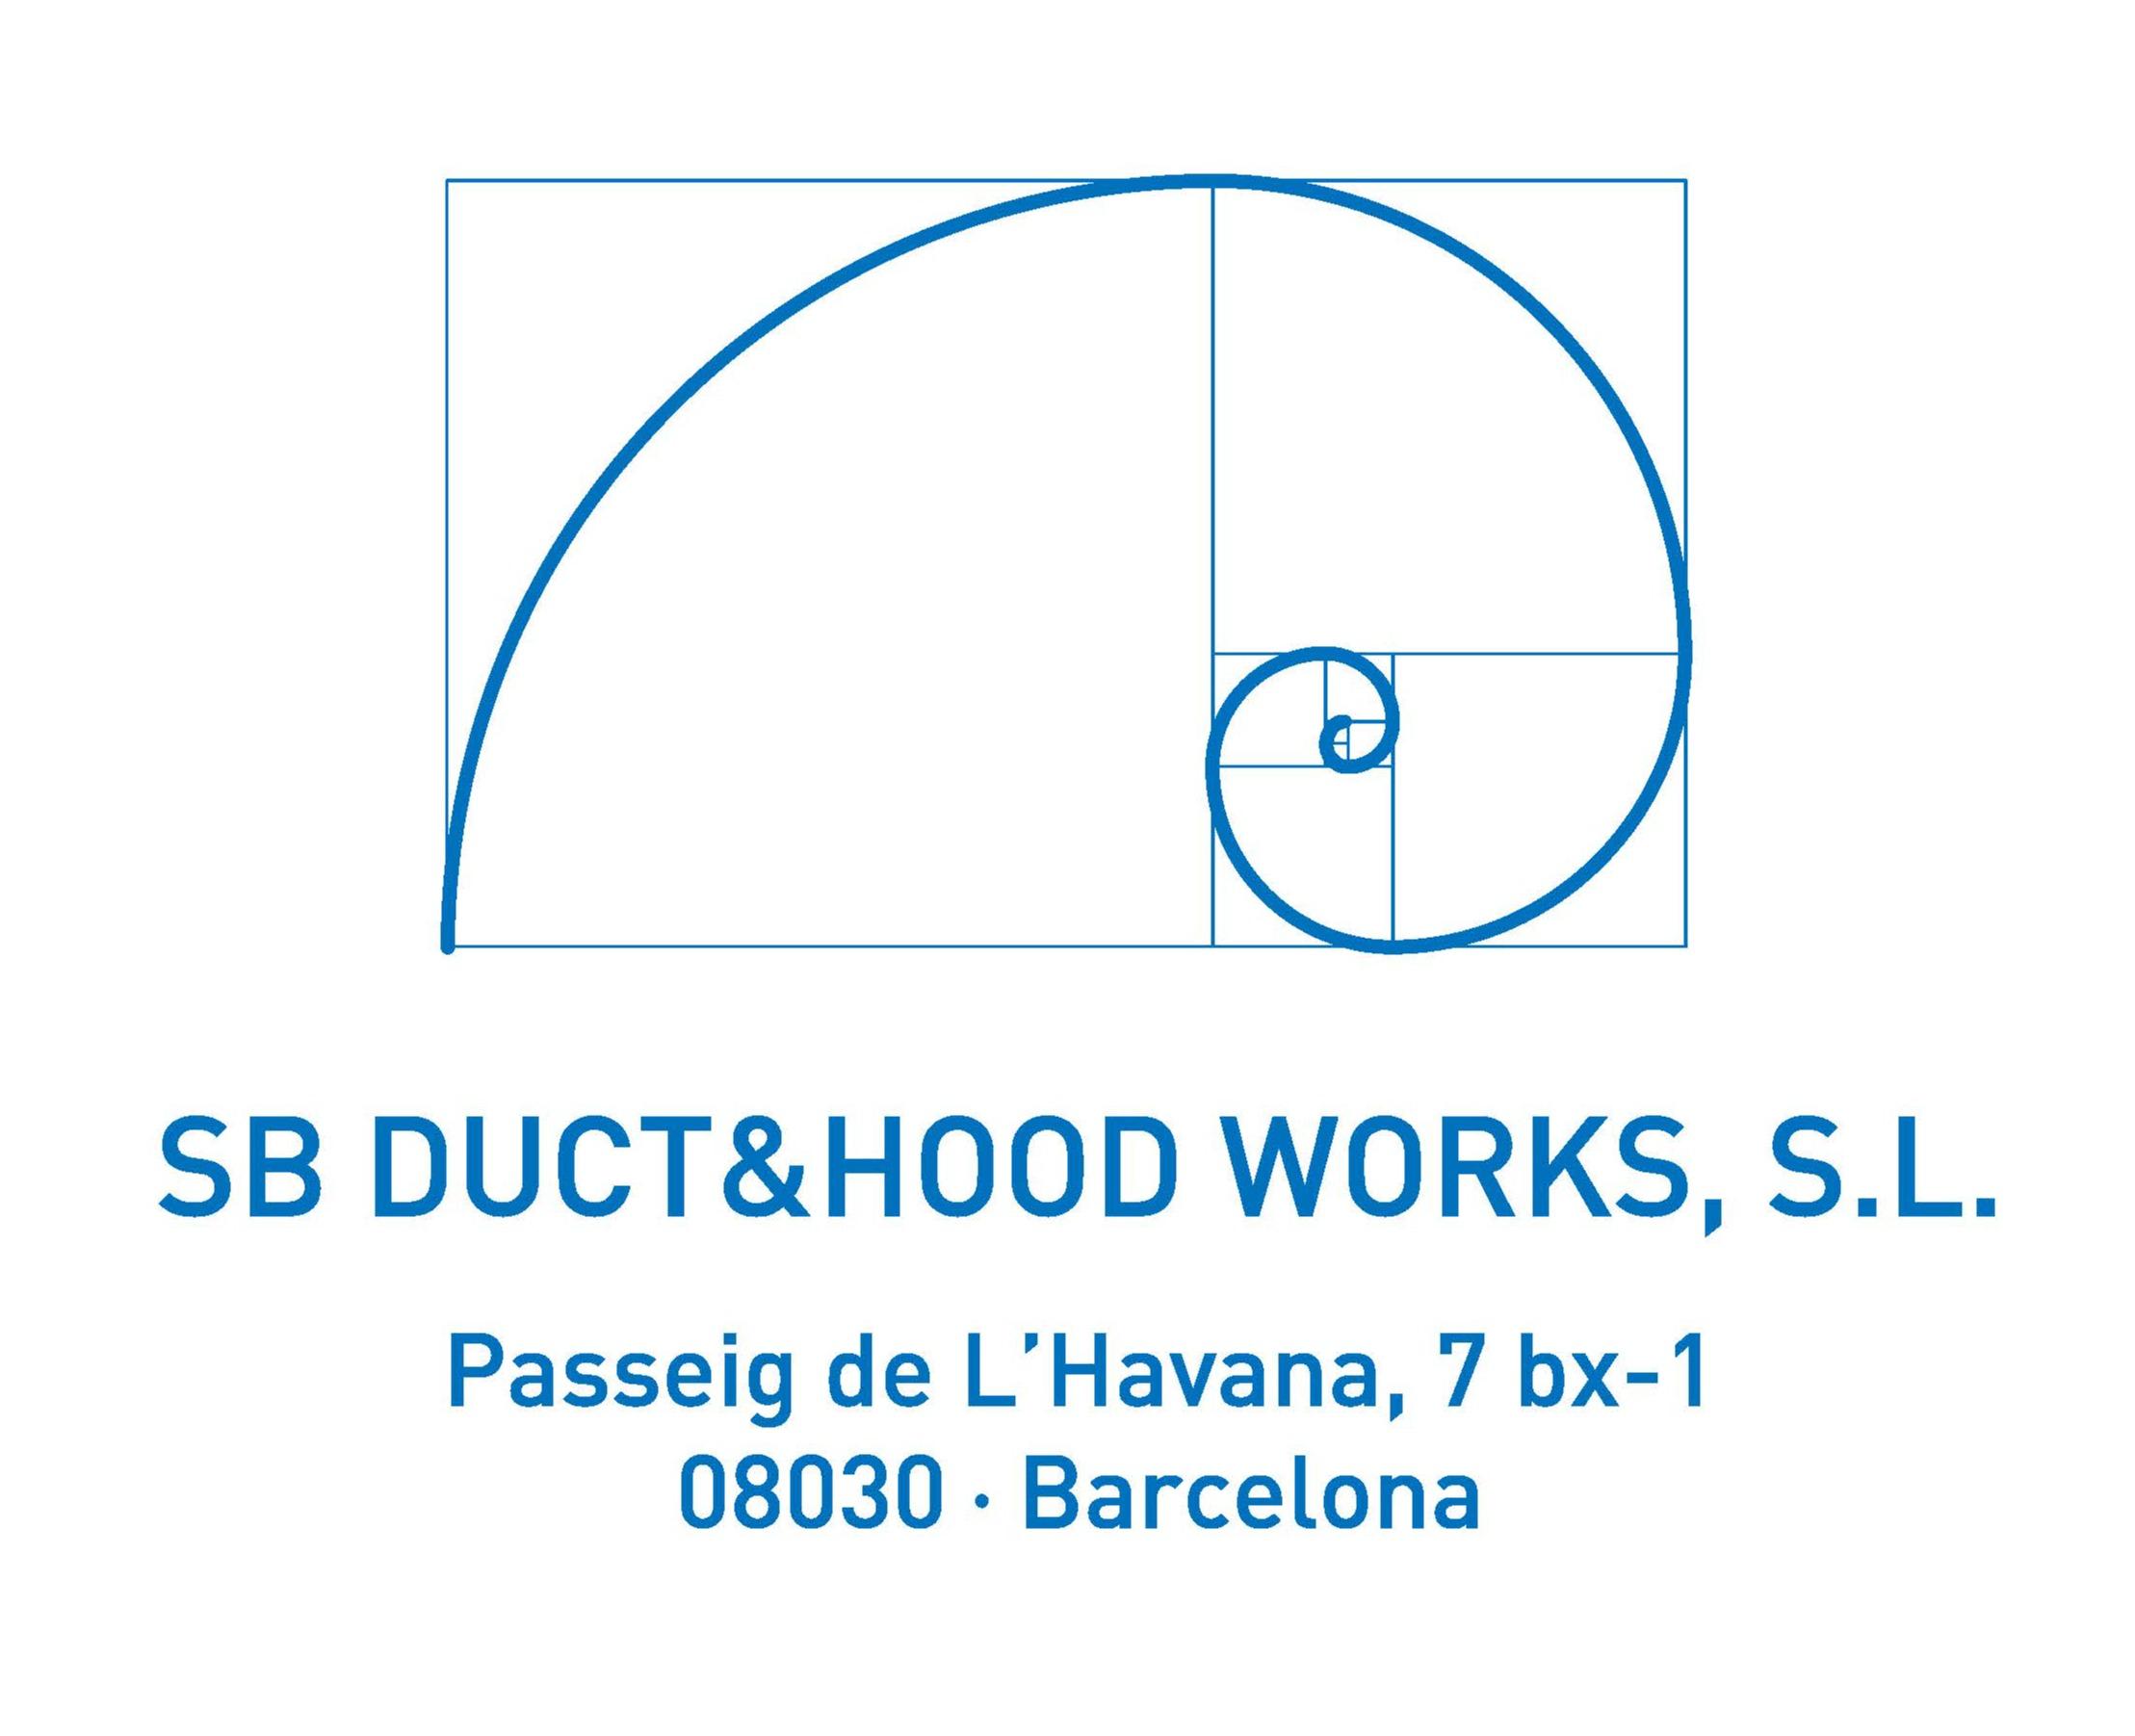 SB DUCT & HOOD WORKS S.L